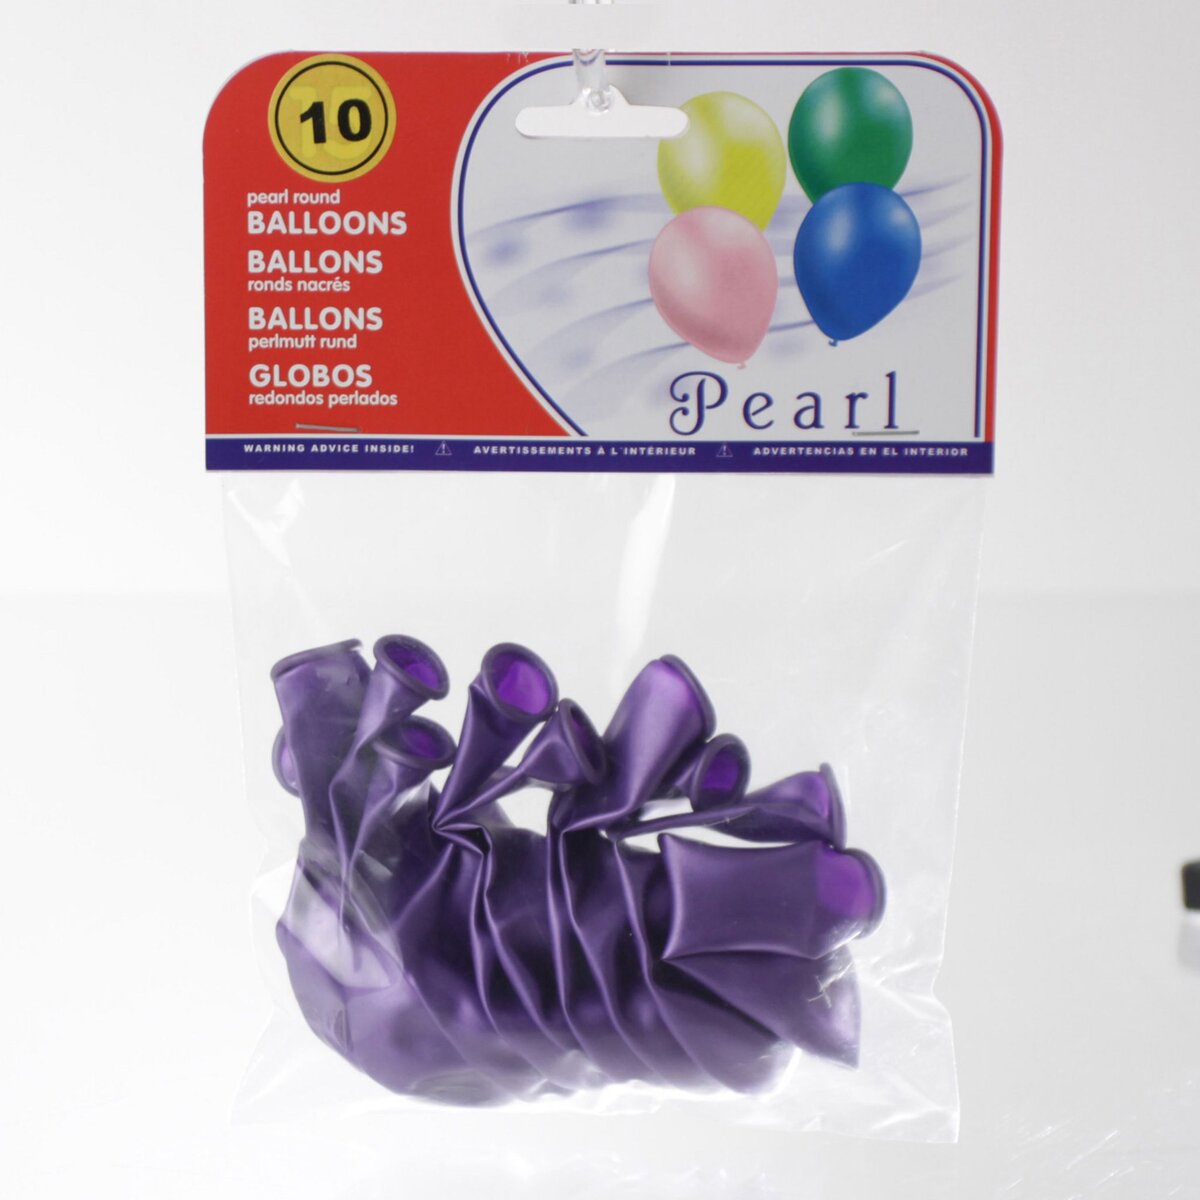 8 Ballons violet nacré 30cm